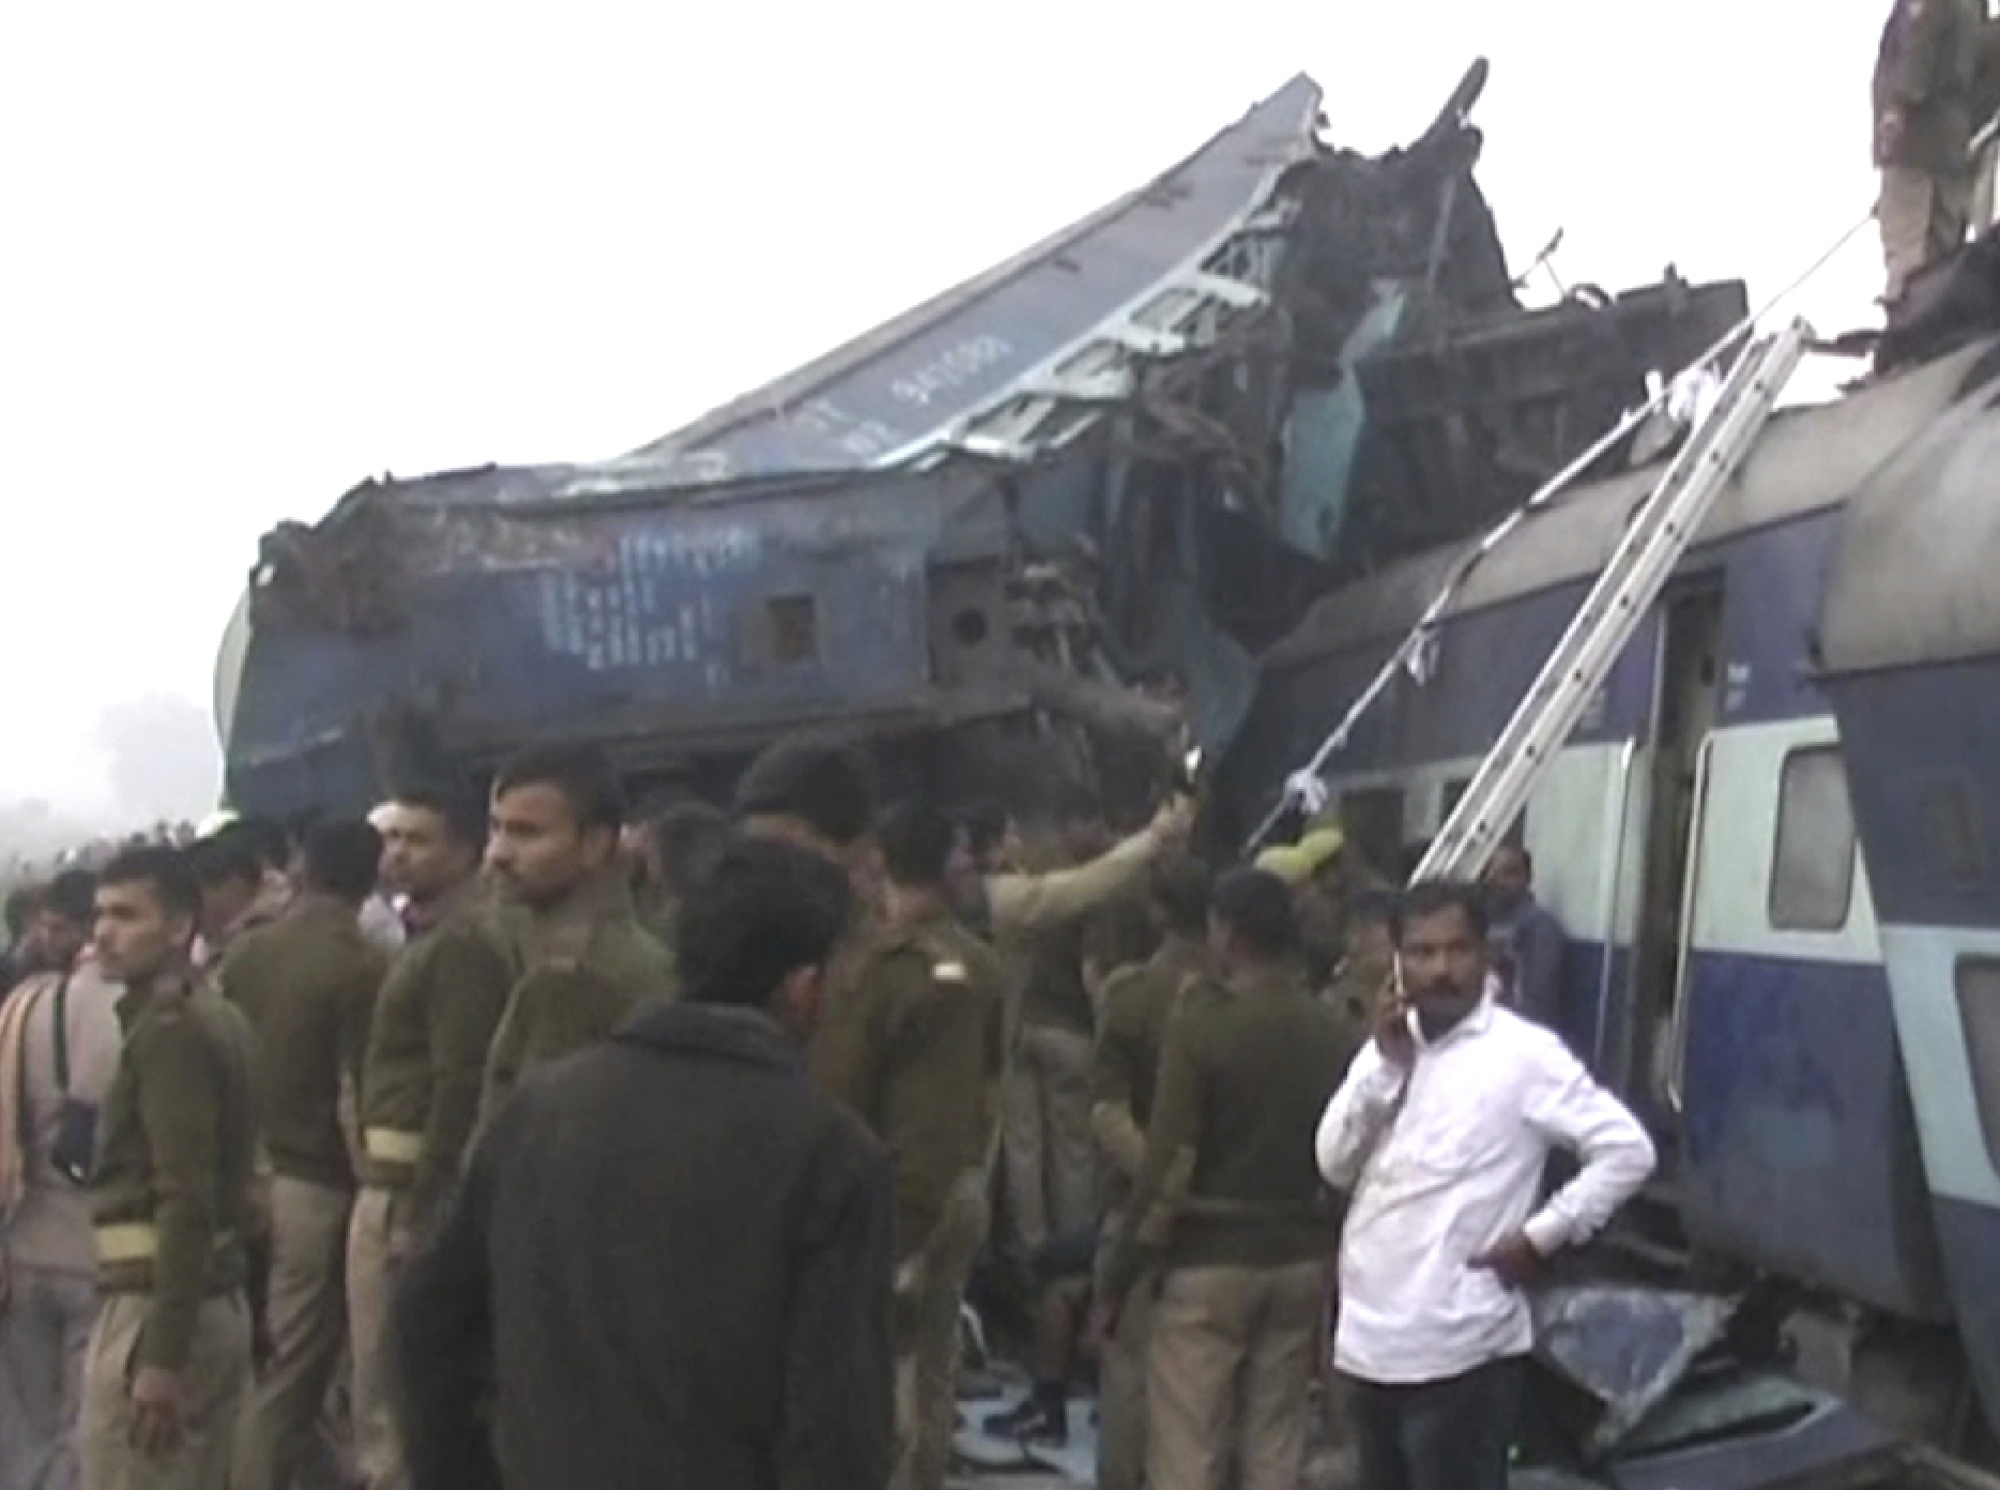 WA 24 Kanpur - Najmenej 63 ¾udí v nede¾u ráno 20. novembra 2016 zomrelo a desiatky ïalích utrpeli zranenia, keï okolo 3.00 hodiny rannej miestneho èasu (v sobotu 22.30 SEÈ) vyko¾ajil v severoindickom zväzovom táte Uttarpradé expresný vlak. Oznámila to polícia.Pribline 150 je zranených, povedal novinárom na tlaèovej konferencii policajný komisár Zaki Ahmed. K nehode expresu Patna-Indore dolo asi 100 kilometrov od ve¾kého priemyselného mesta Kanpur, kam sanitky previezli do nemocníc zranených. Mesto Kanpur je významnou elezniènou kriovatkou naj¾udnatejieho indického tátu, cez ktorú denne prechádzajú stovky vlakov. Zatia¾ nie je jasné, èo dnenú nehodu zavinilo. Na snímke indické bezpeènostné zloky zasahujú na mieste nehody expesného vlaku v severoindickom zväzovom táte Uttarpradé 20. novembra 2016. FOTO TASR /AP In this image made from video, India's security forces personnel gather at the site of a train accident near Pukhrayan, about 270 kilometers (168 miles) from Allahabad, Sunday, Nov. 20, 2016. Rescue workers used gas cutters to pull out survivors after 14 coaches of a passenger train rolled off the track in northern India early Sunday, police said. (KK Productions via AP)